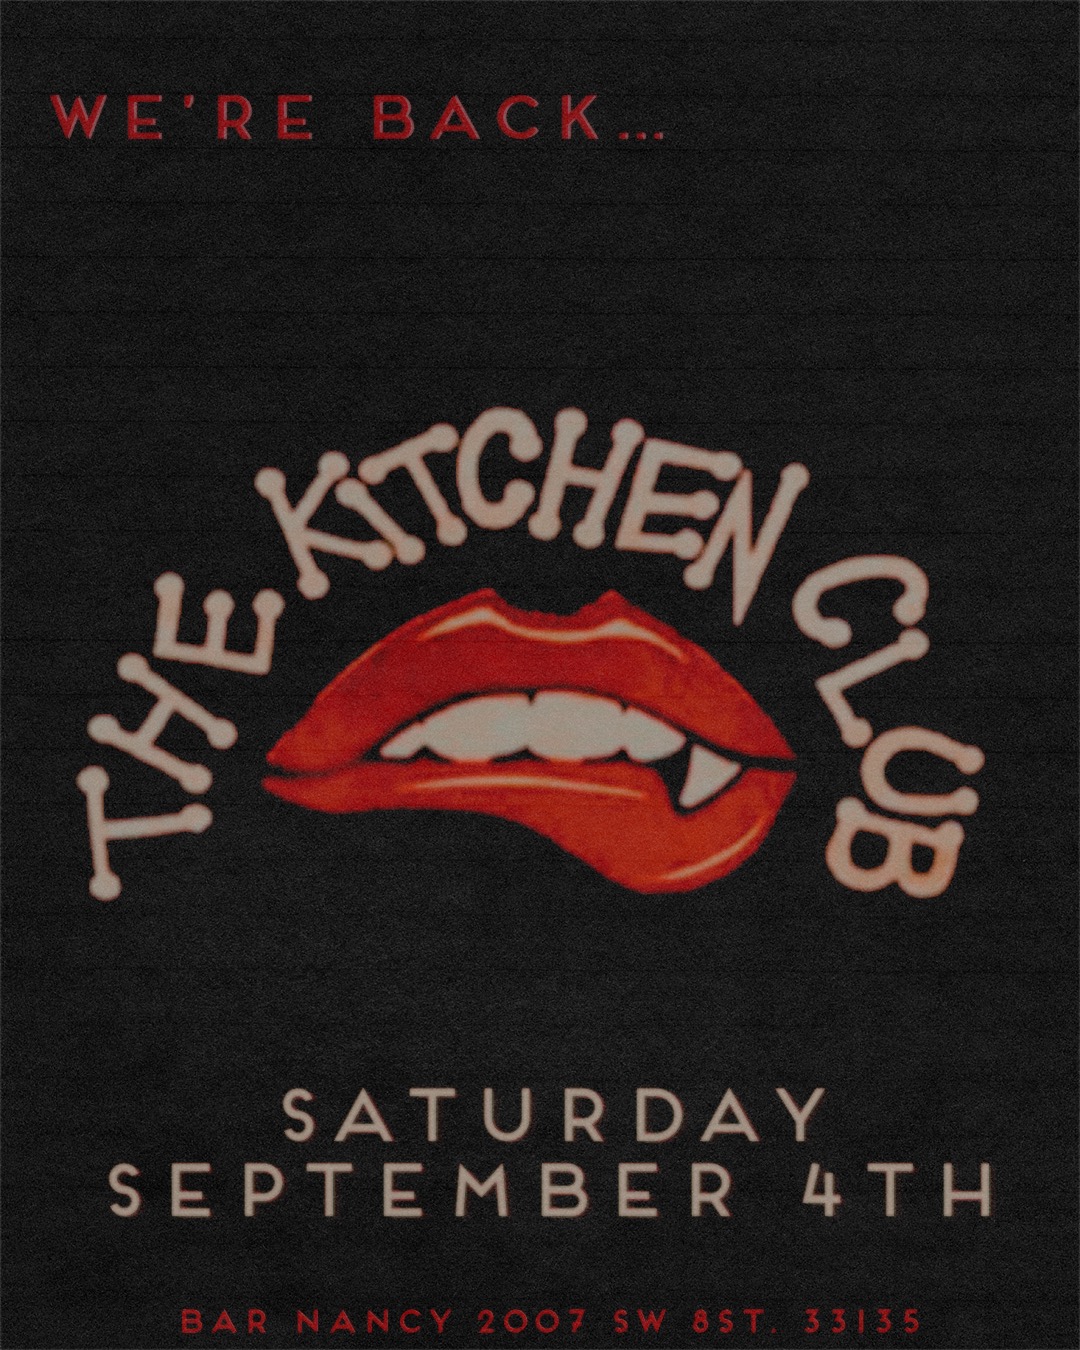 The Kitchen Club at Bar Nancy - Saturday September 4th at Bar Nancy